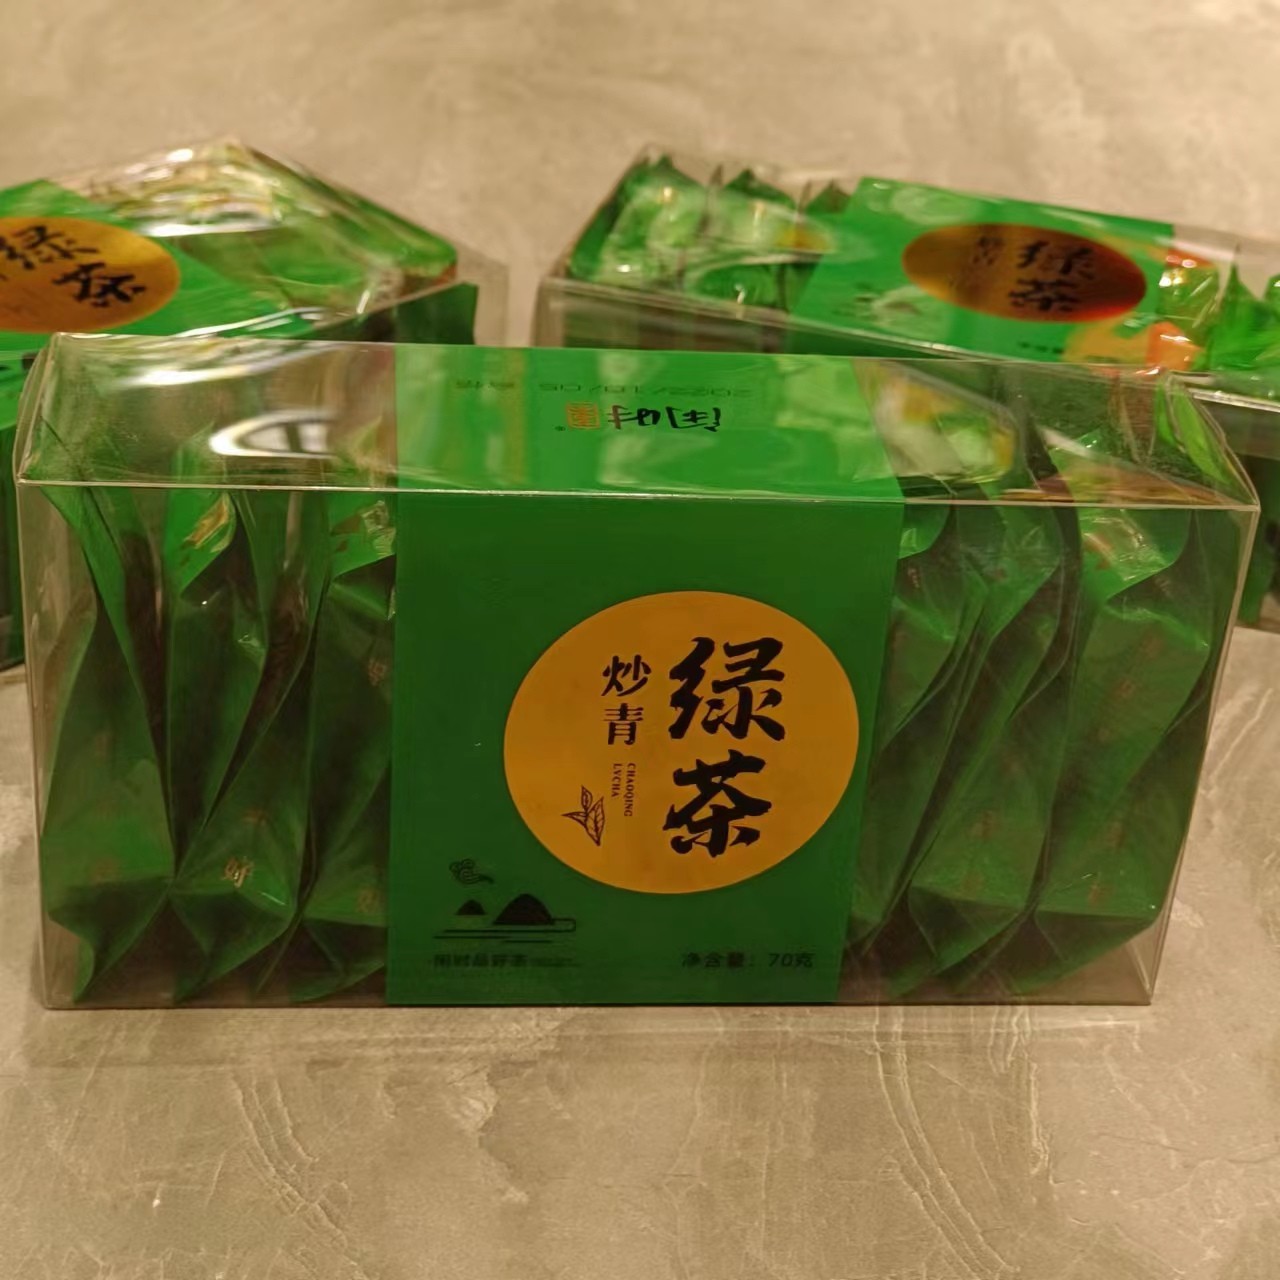 【今日新品】闲时绿茶高山云雾茶叶浓香炒青绿茶独立小包装70克